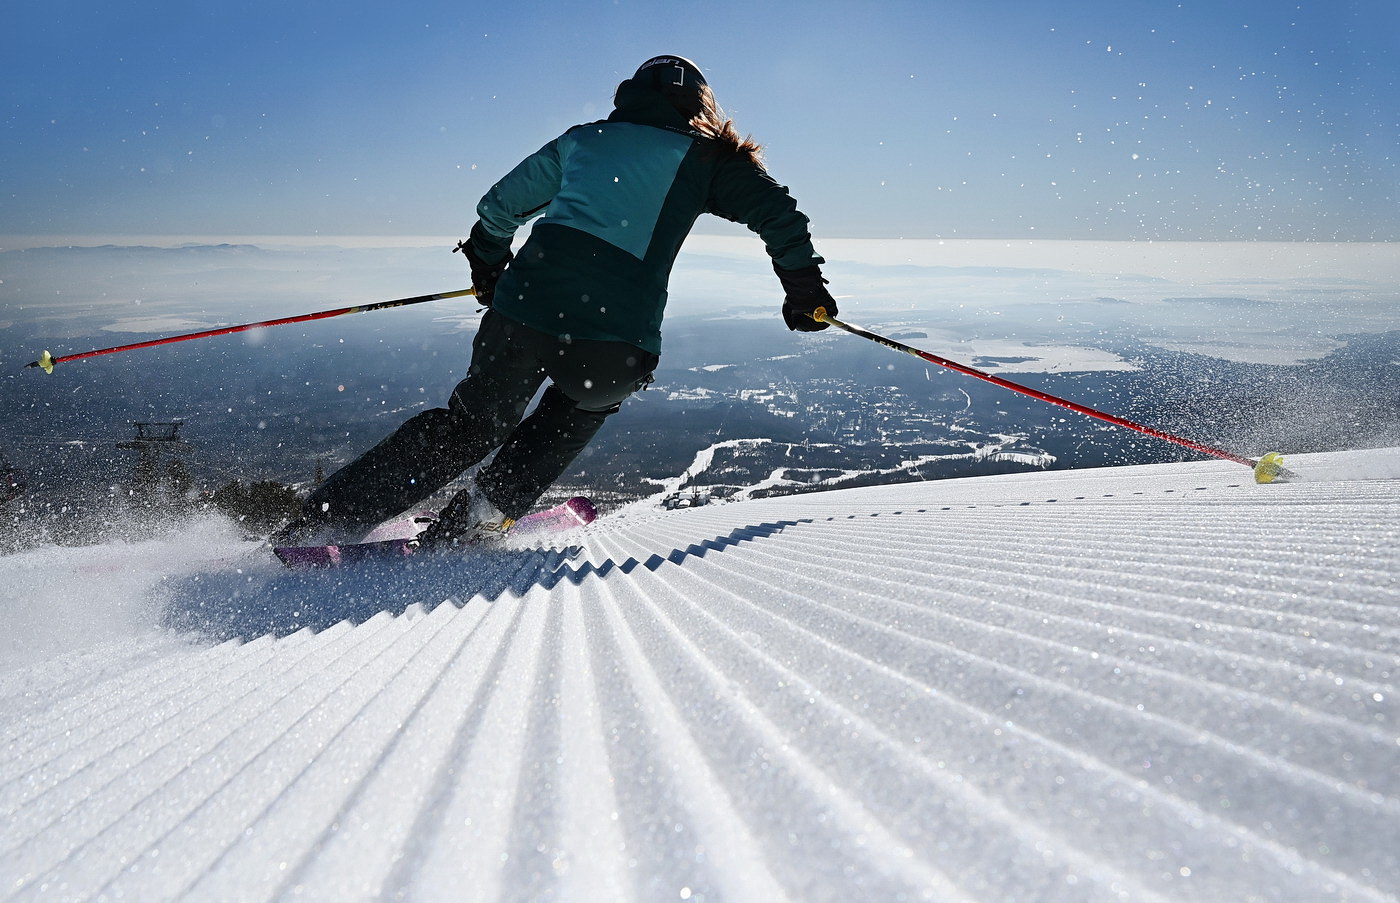 Kedy sa začína lyžiarska sezóna vo Vysokých Tatrách?